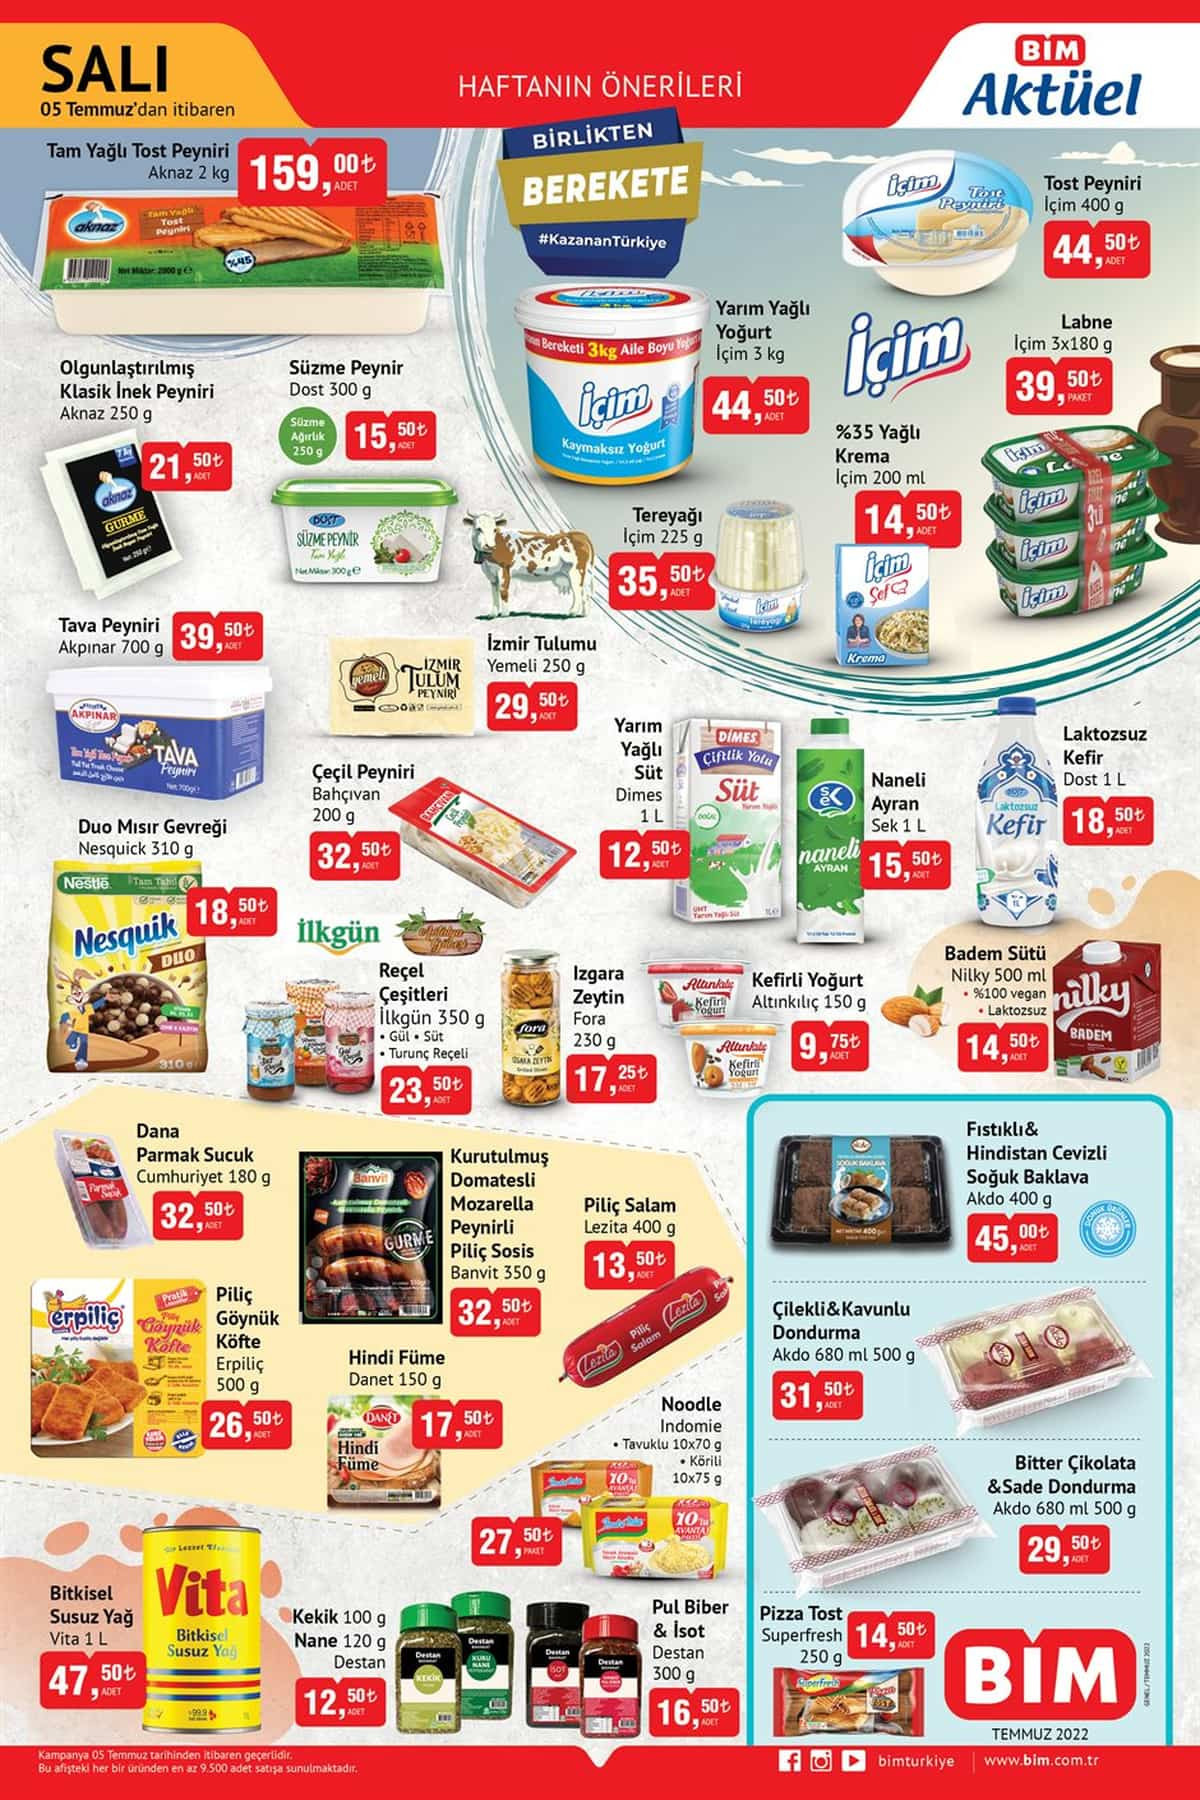 5 Temmuz Salı BİM Aktüel Ürün Kataloğu Yayınlandı: Beyaz Peynir, Sıvı Yağ, Süt, Salam Fiyatları... - Resim : 2